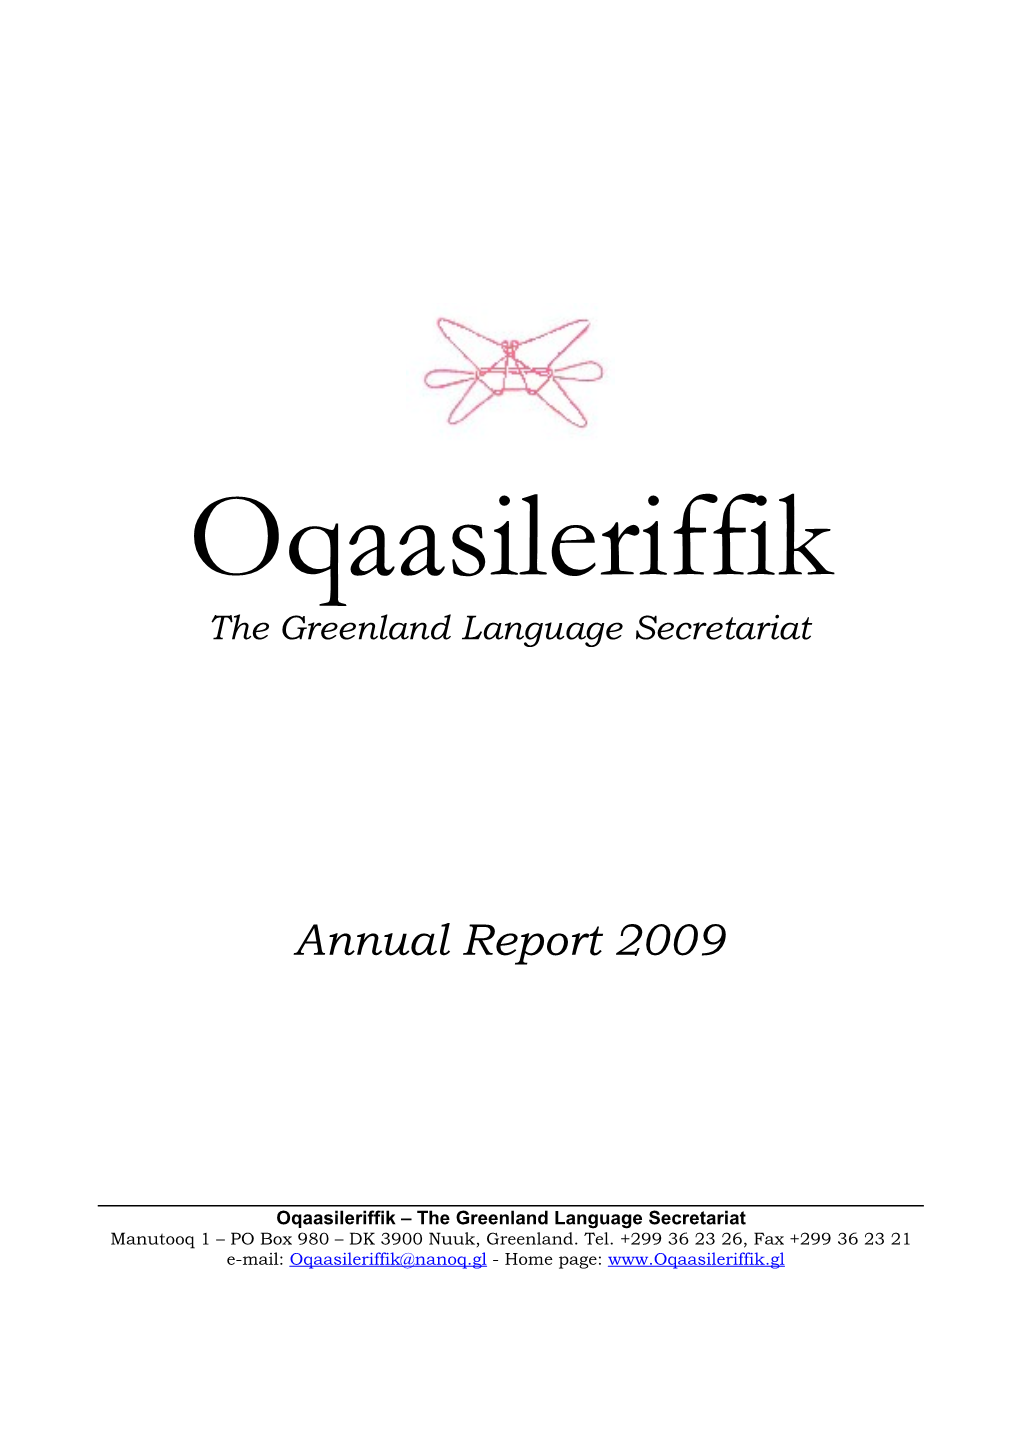 The Greenland Language Secretariat Annual Report 2009